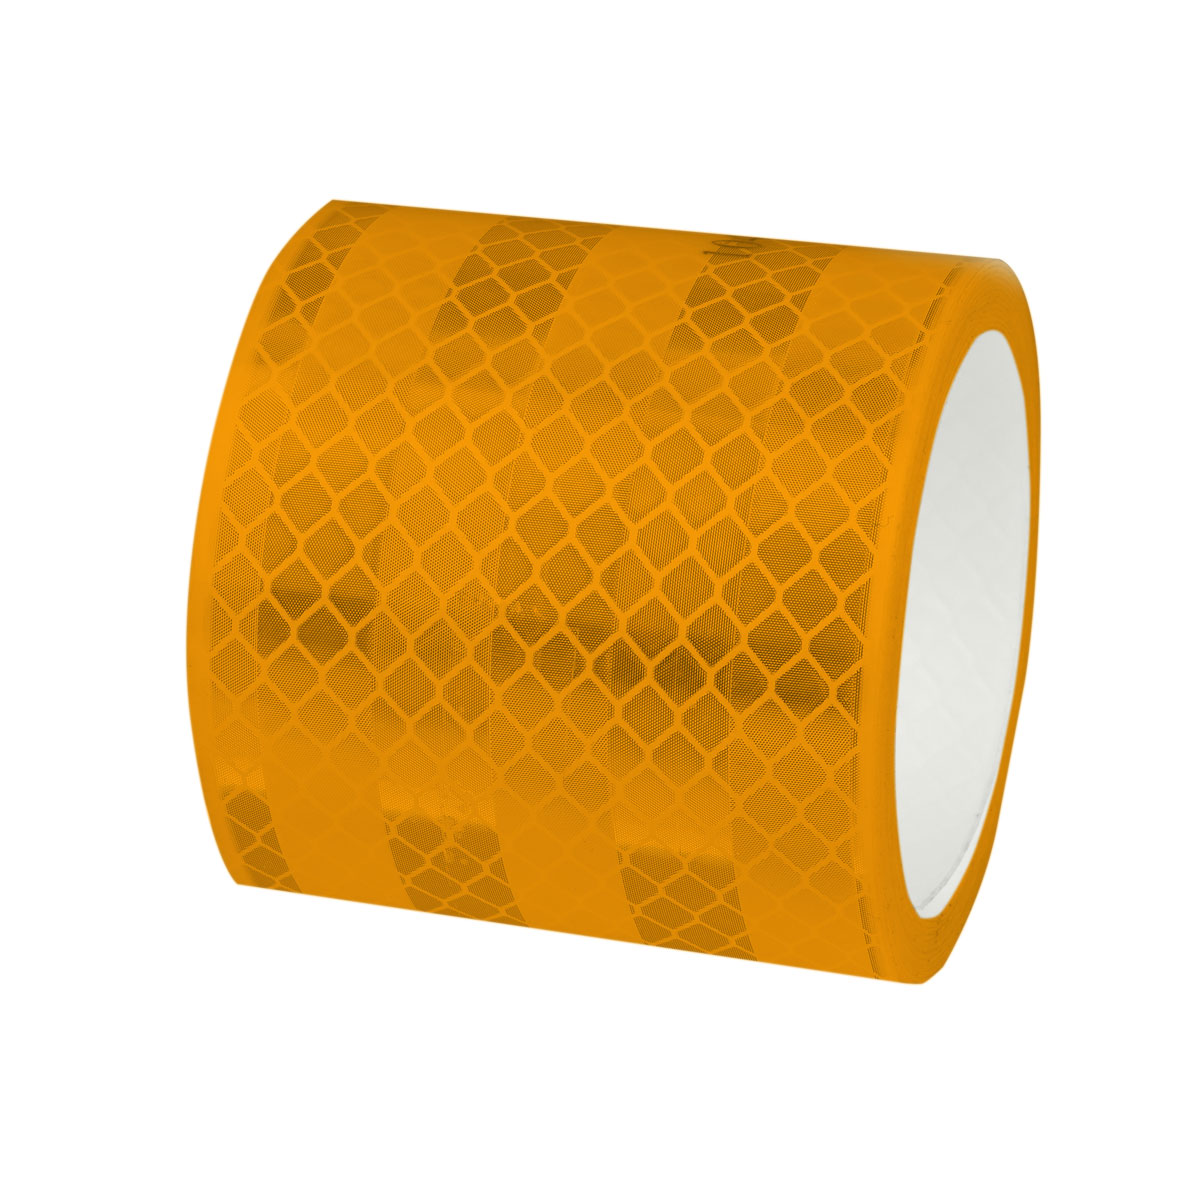 Cube Safety Band - Reflektorband kaufen